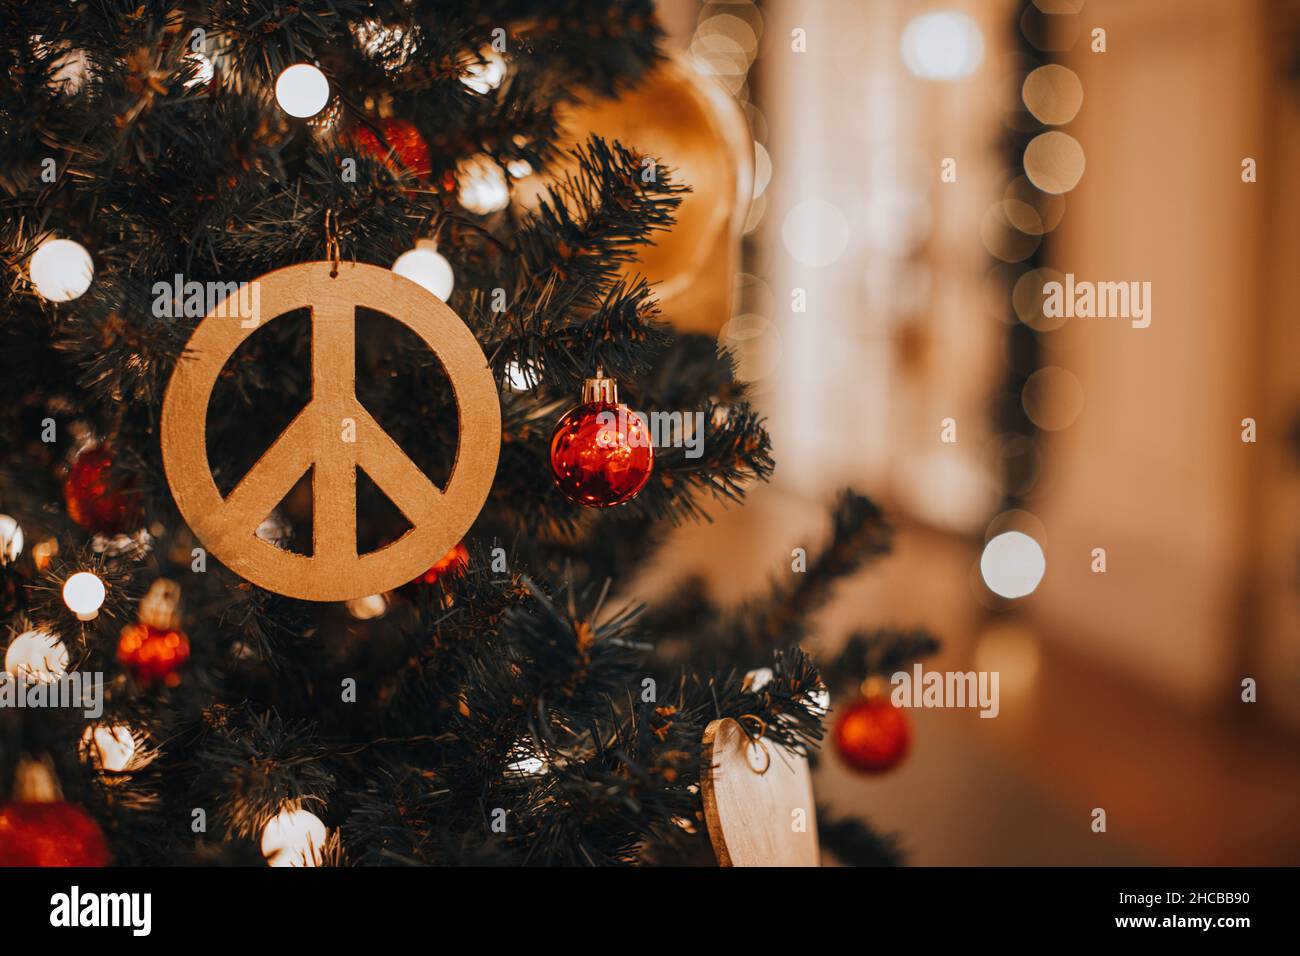 Décoration de Noël avec figurine hippie Icon accrochée sur un arbre de Noël.Décor créatif Banque D'Images